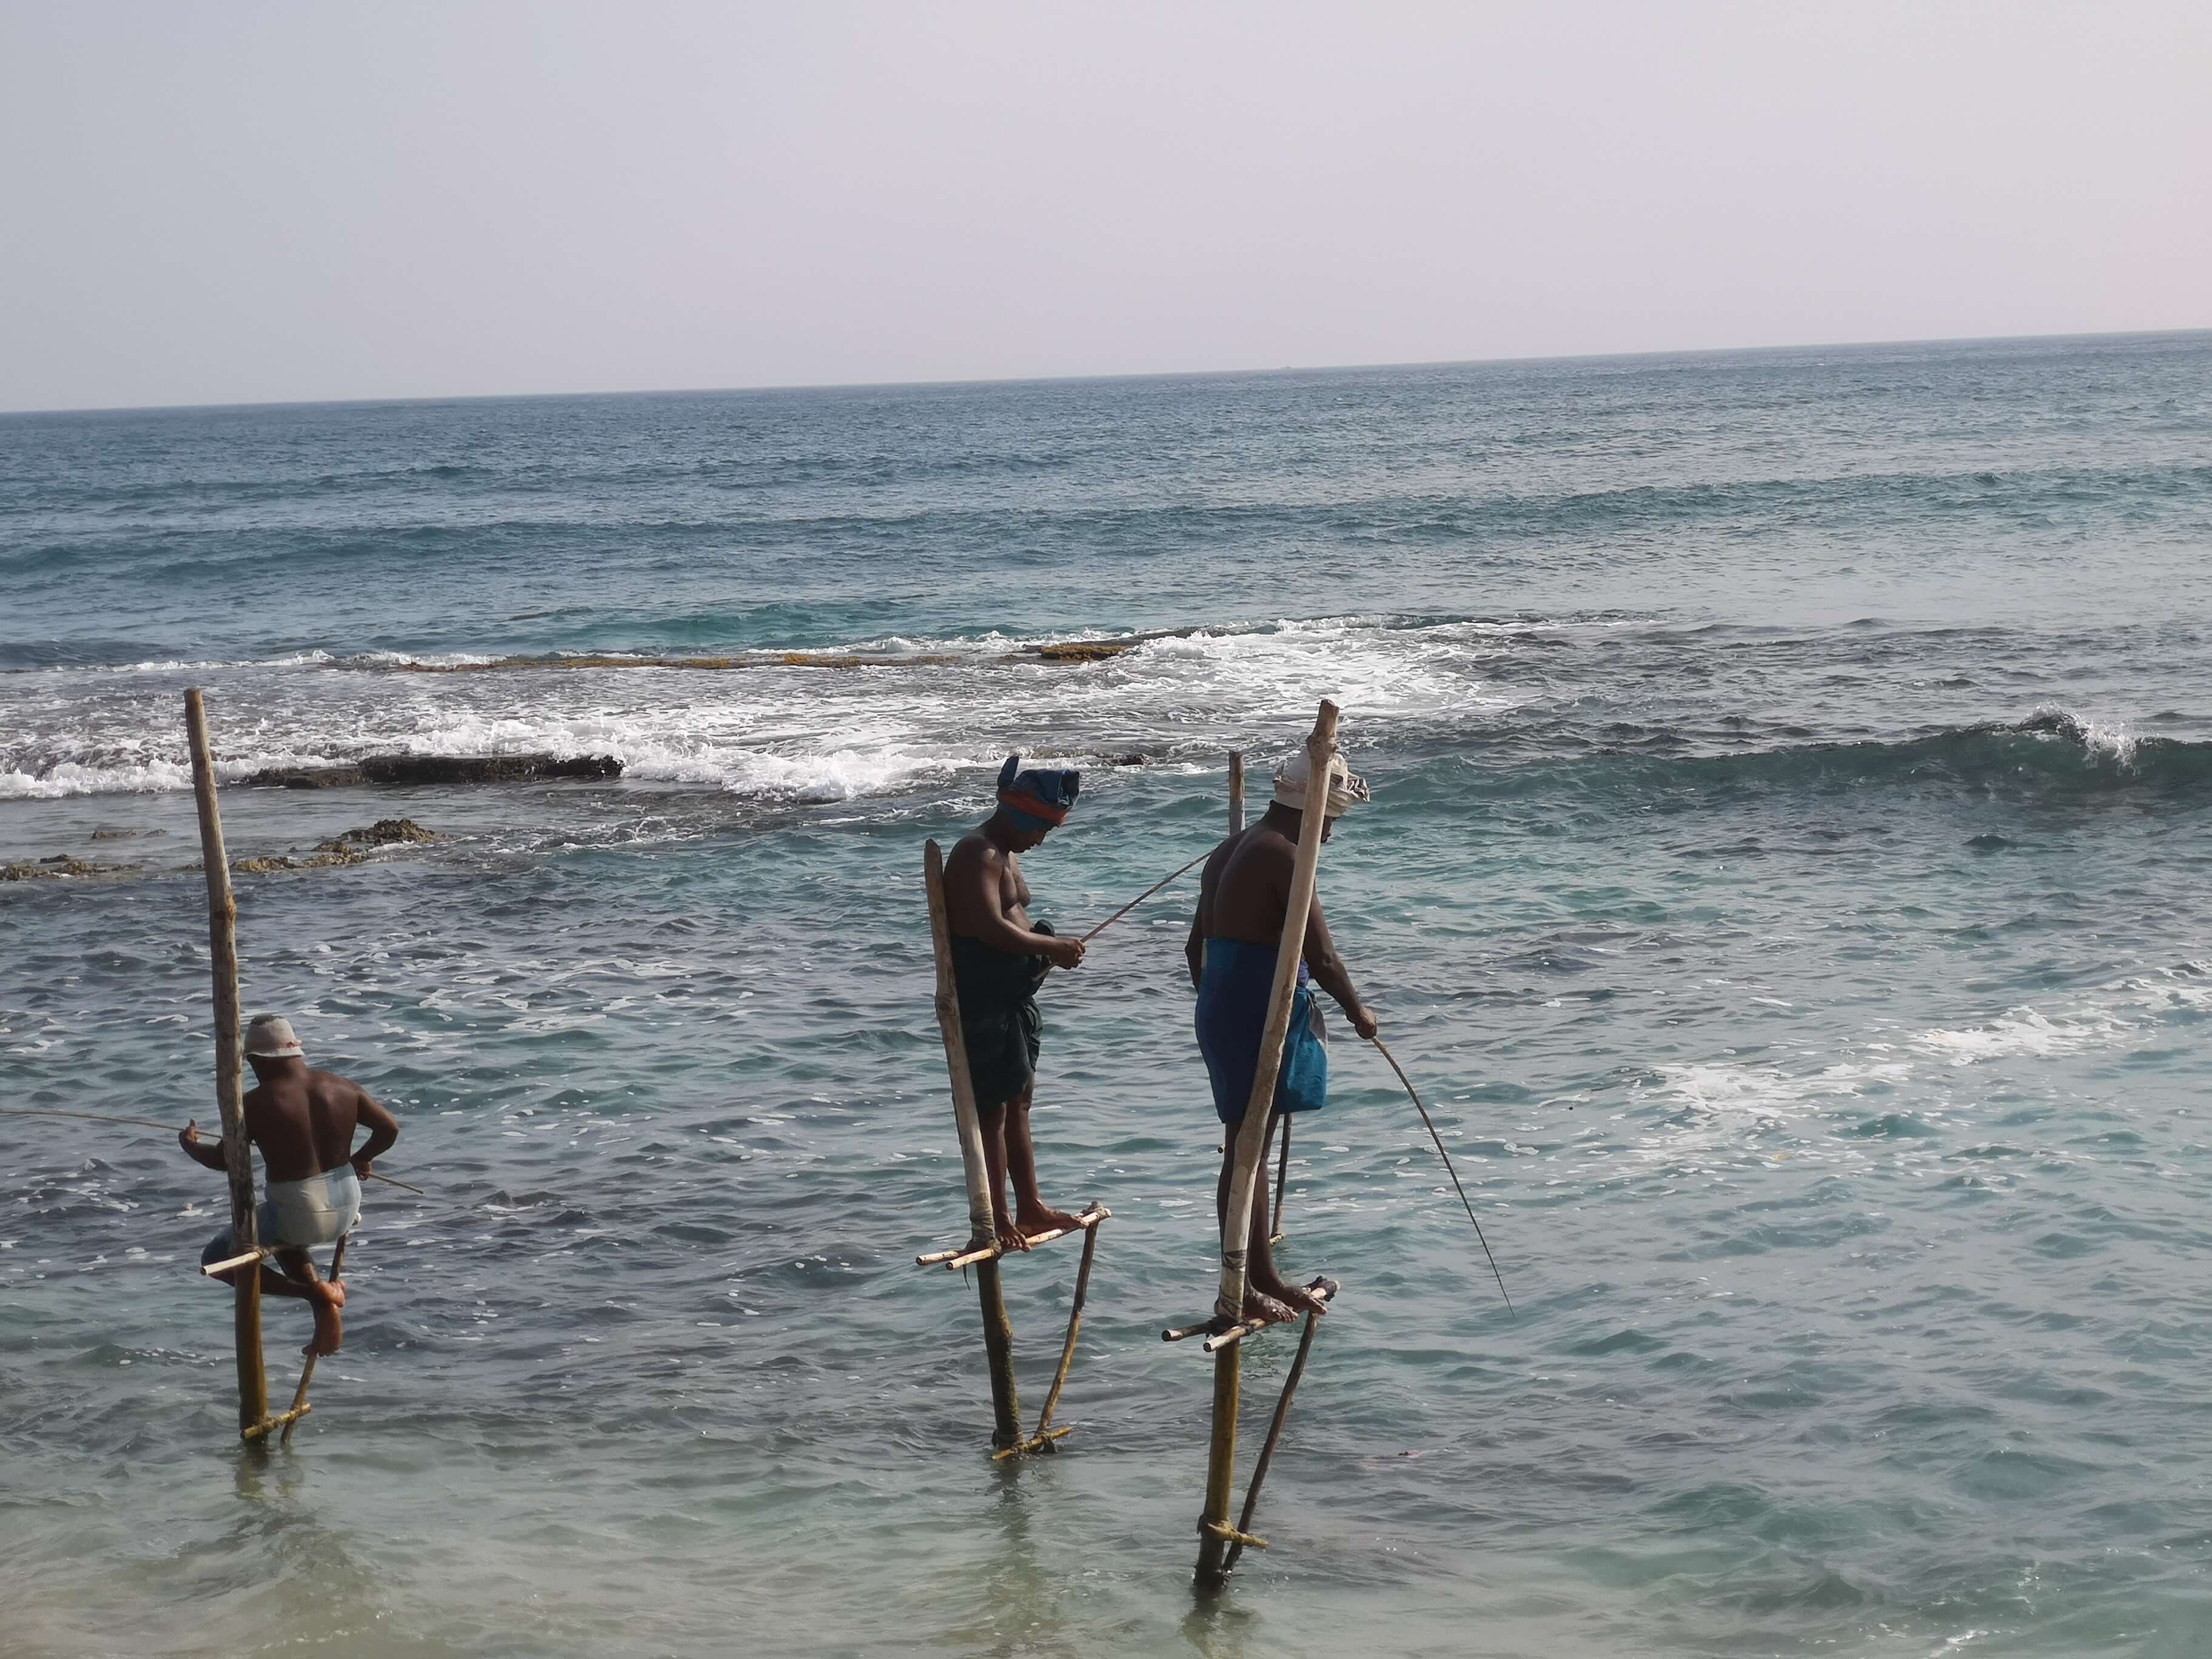 Вид на трех рыбаков, ловящих рыбу традиционным способом рыбалки, называемым «ловля на ходулях».